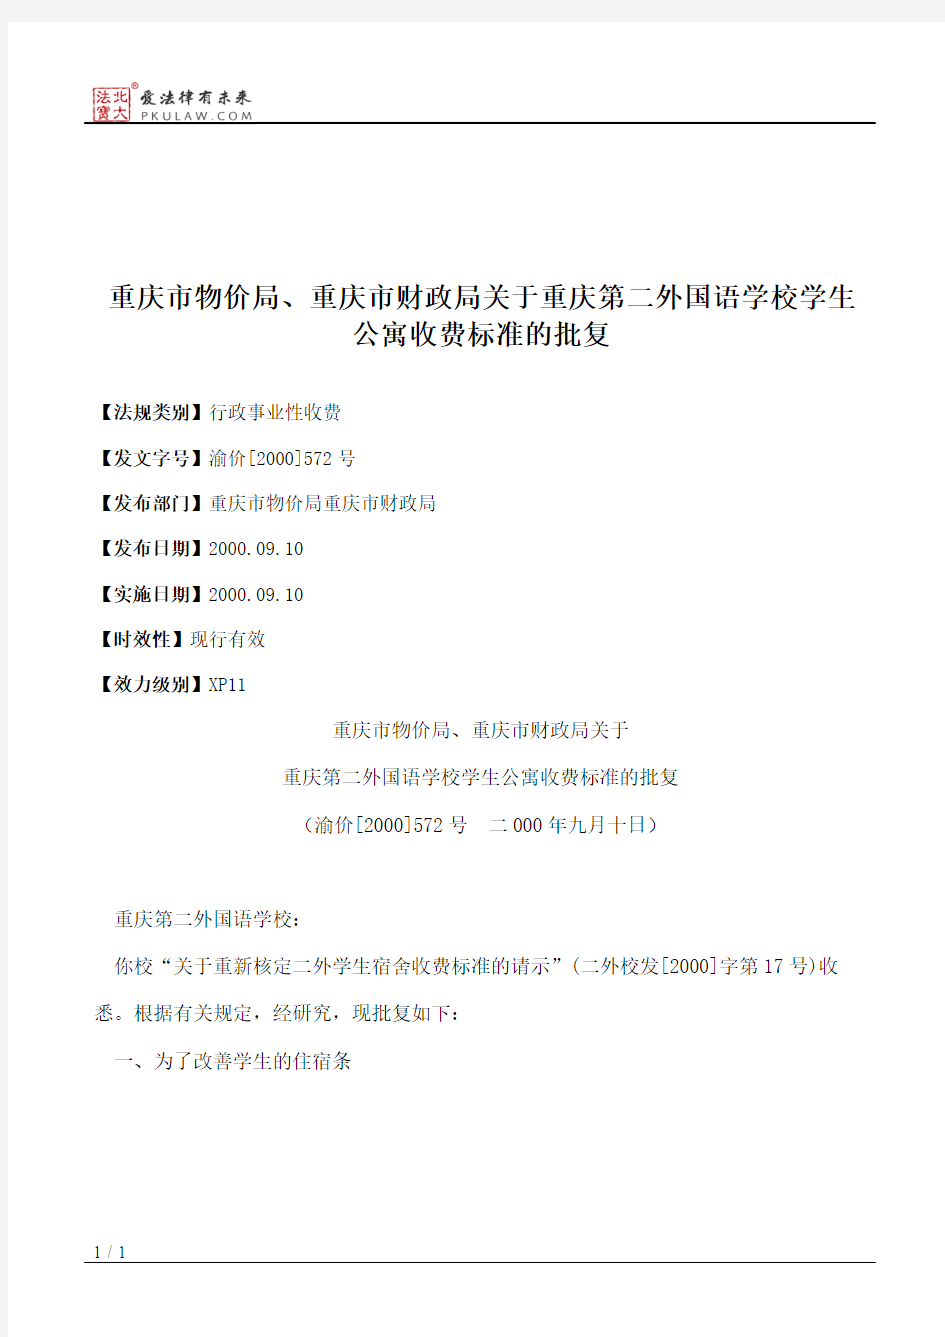 重庆市物价局、重庆市财政局关于重庆第二外国语学校学生公寓收费